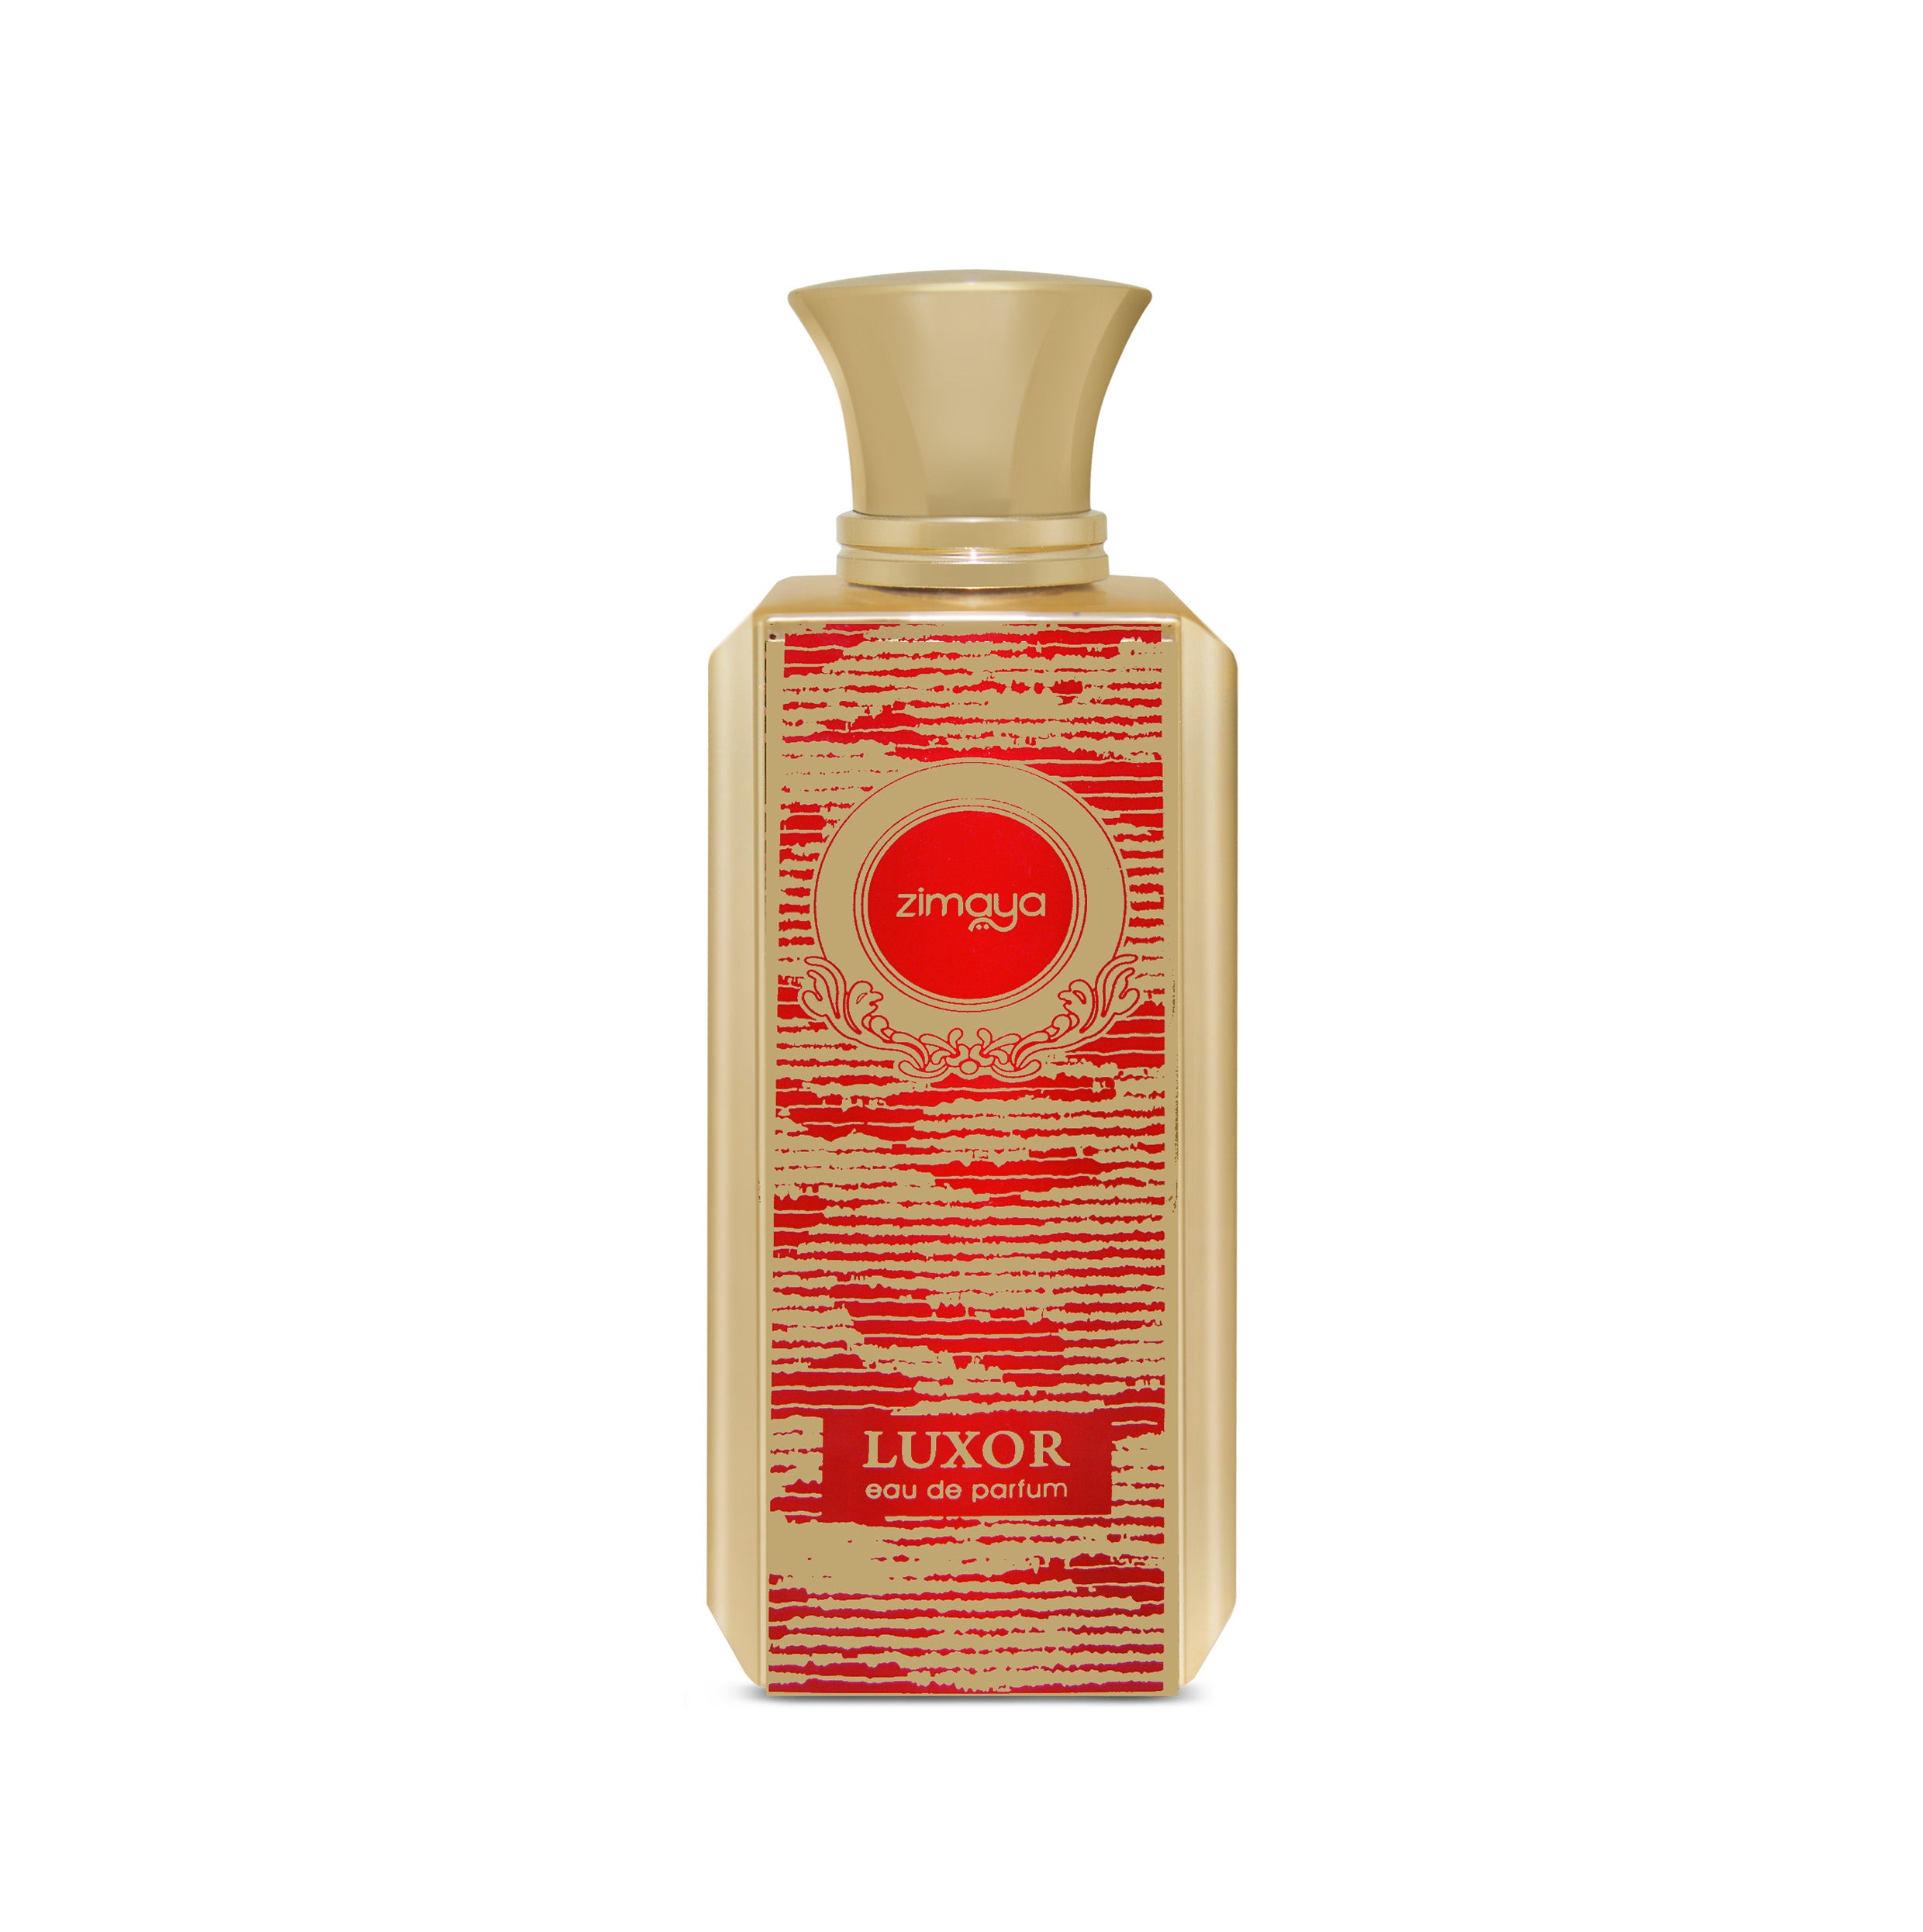 Zimaya Luxor Eau De Parfum 100ml